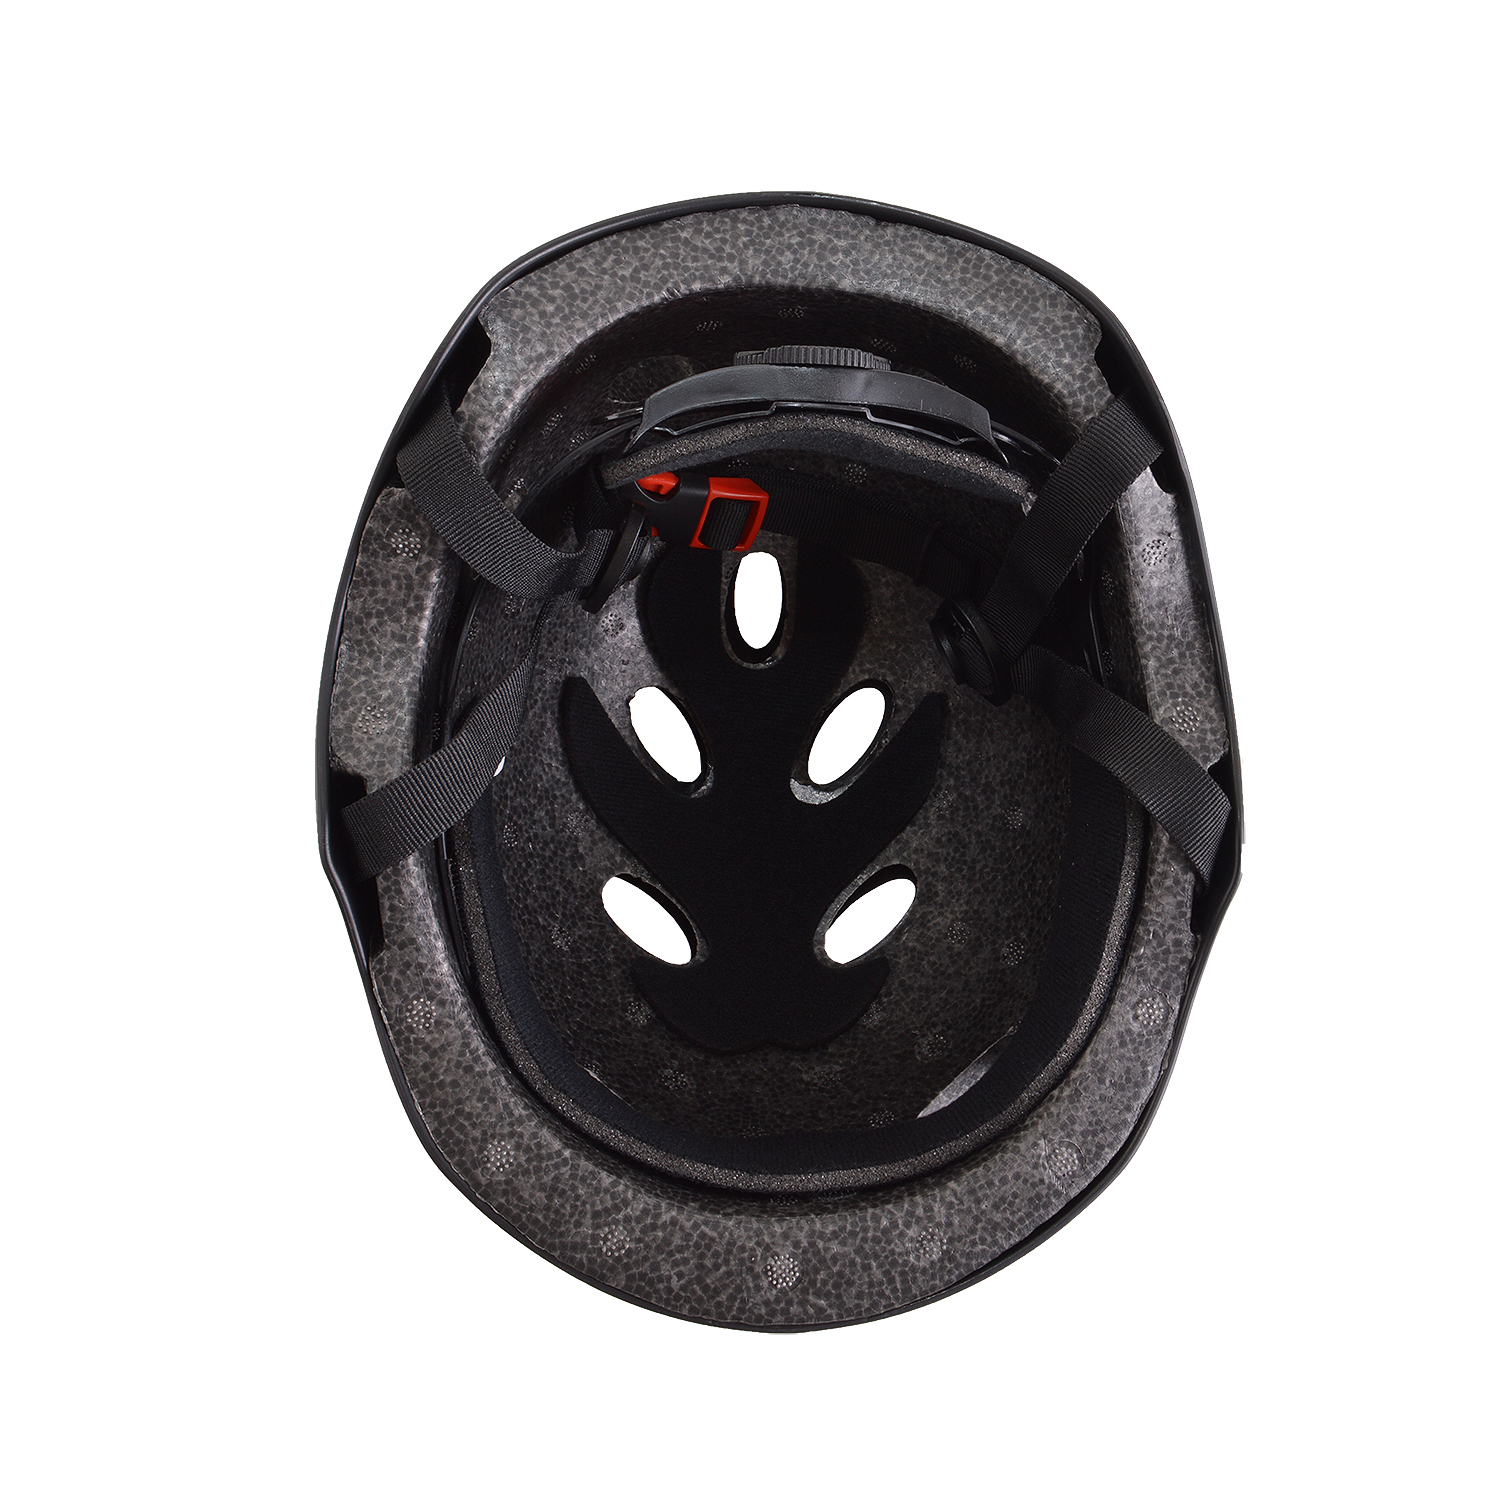 Шлем RGX FCJ-102 Black ABS пластик c регулировкой размера M 56-58 - фото 5